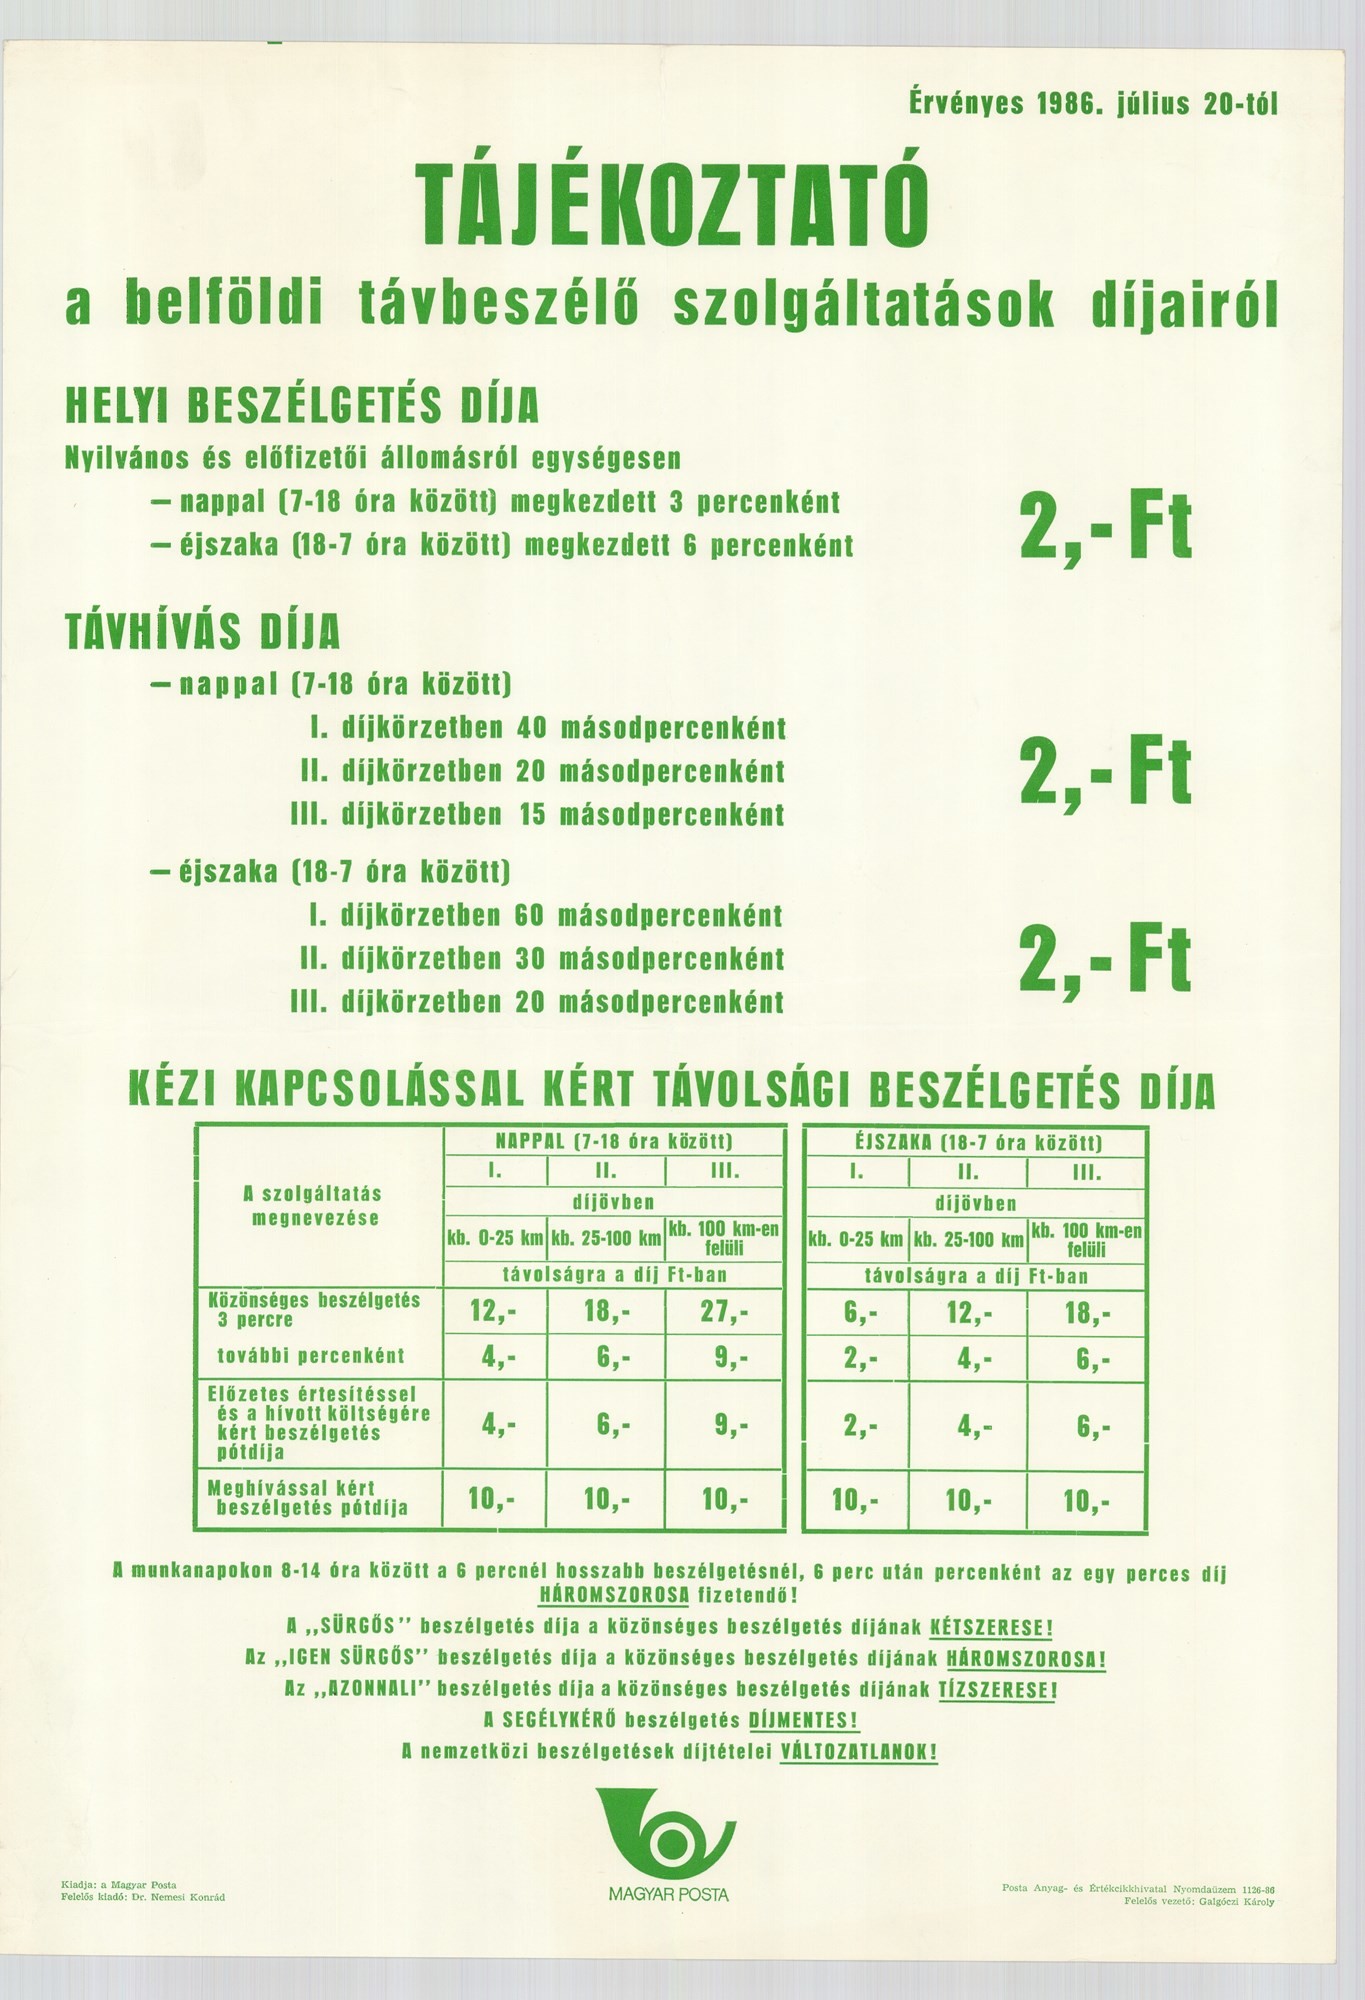 Plakát - Magyar Posta ügyféltájékoztatás, 1986 (Postamúzeum CC BY-NC-SA)